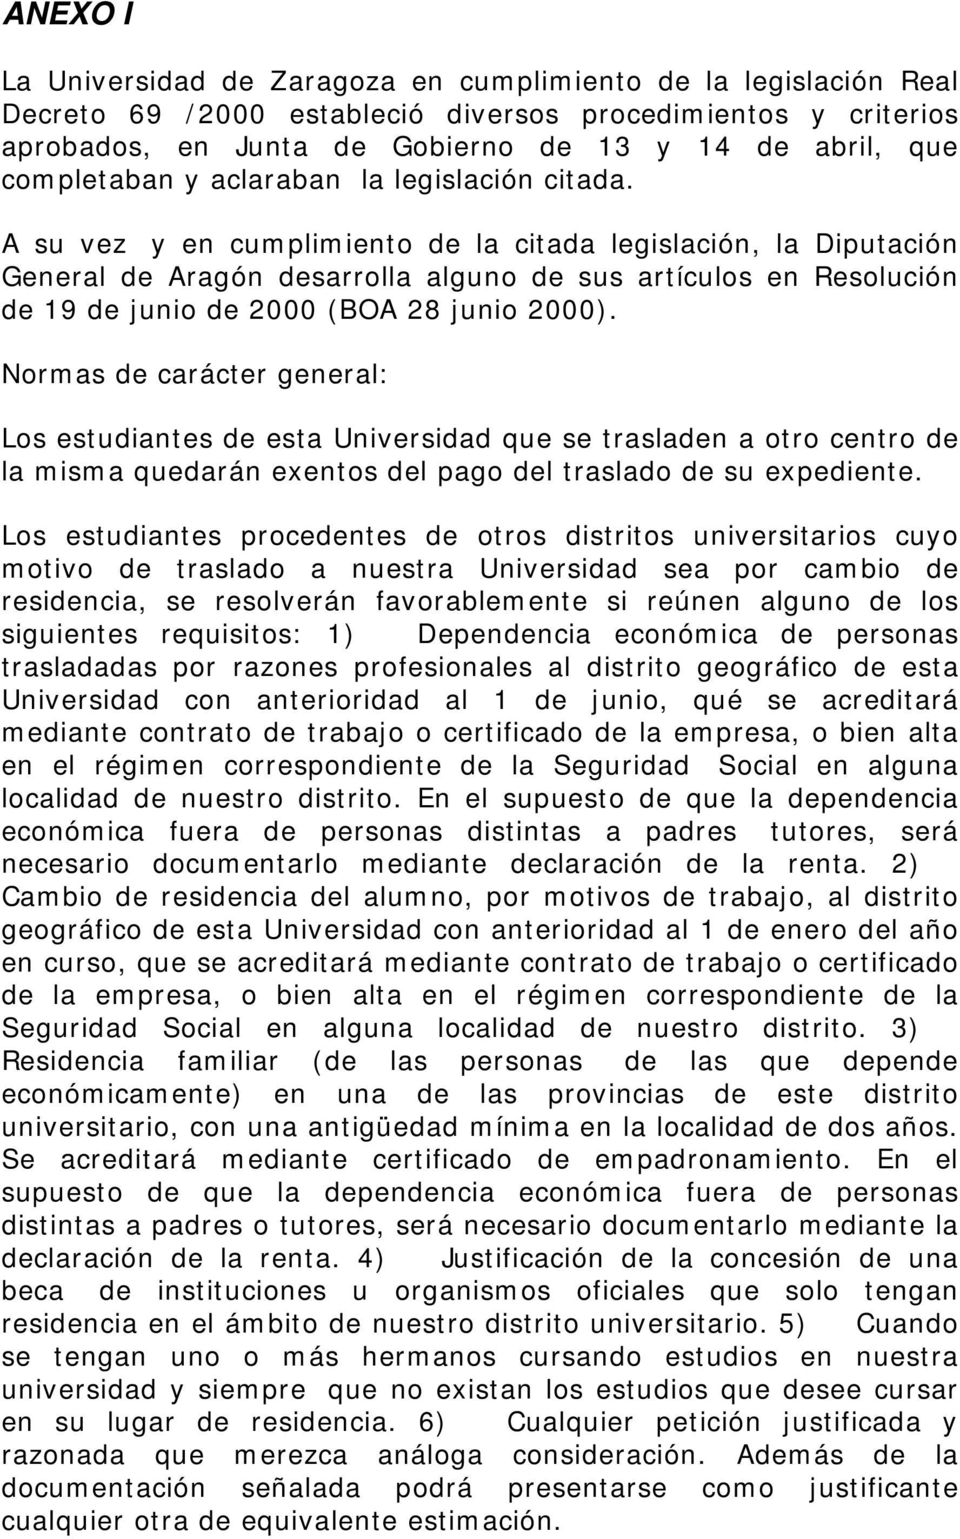 A su vez y en cumplimiento de la citada legislación, la Diputación General de Aragón desarrolla alguno de sus artículos en Resolución de 19 de junio de 2000 (BOA 28 junio 2000).